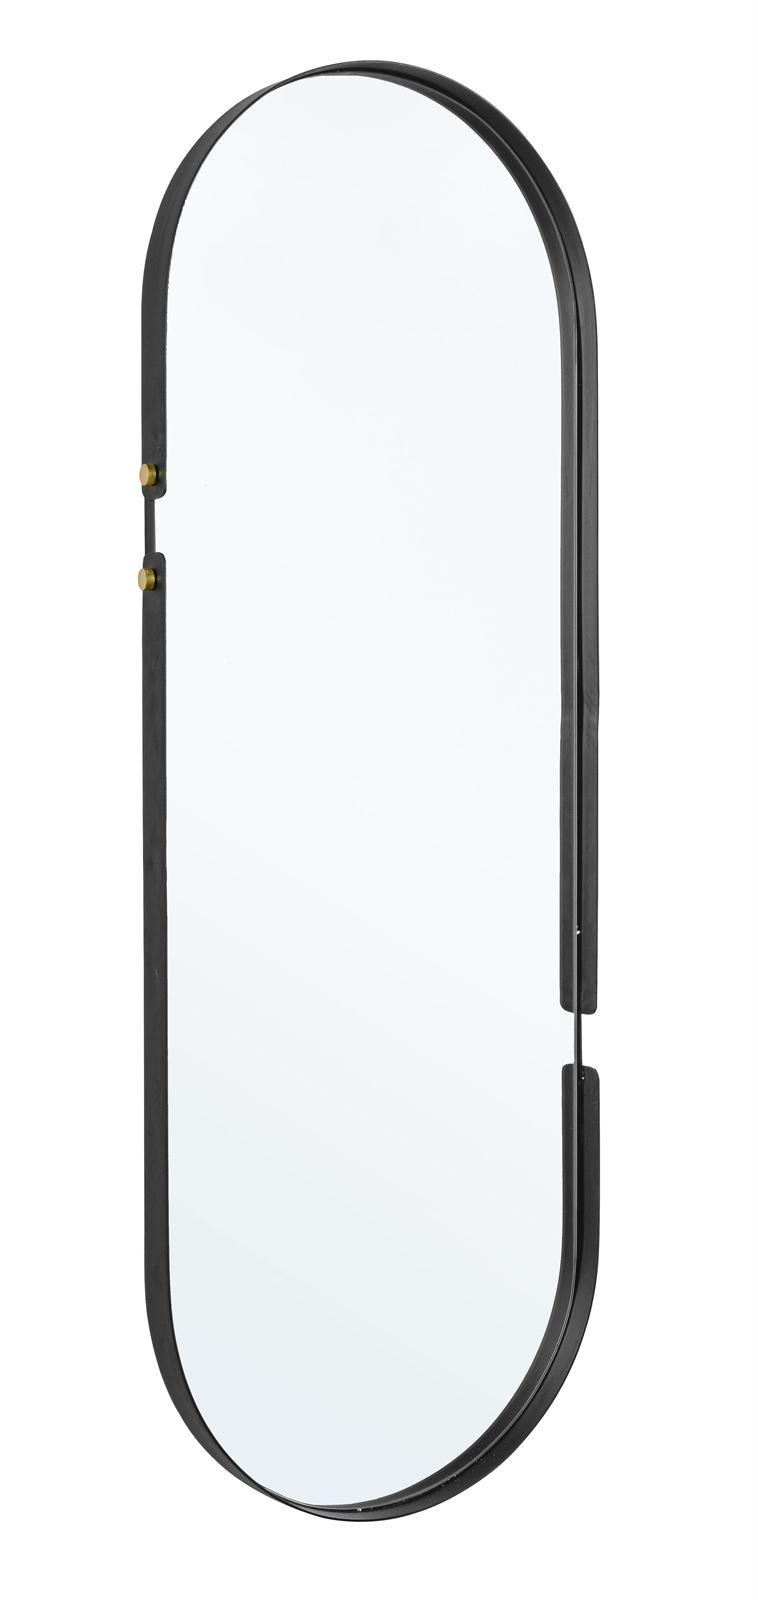 Espejo Ovalado metálico - Imagen 3